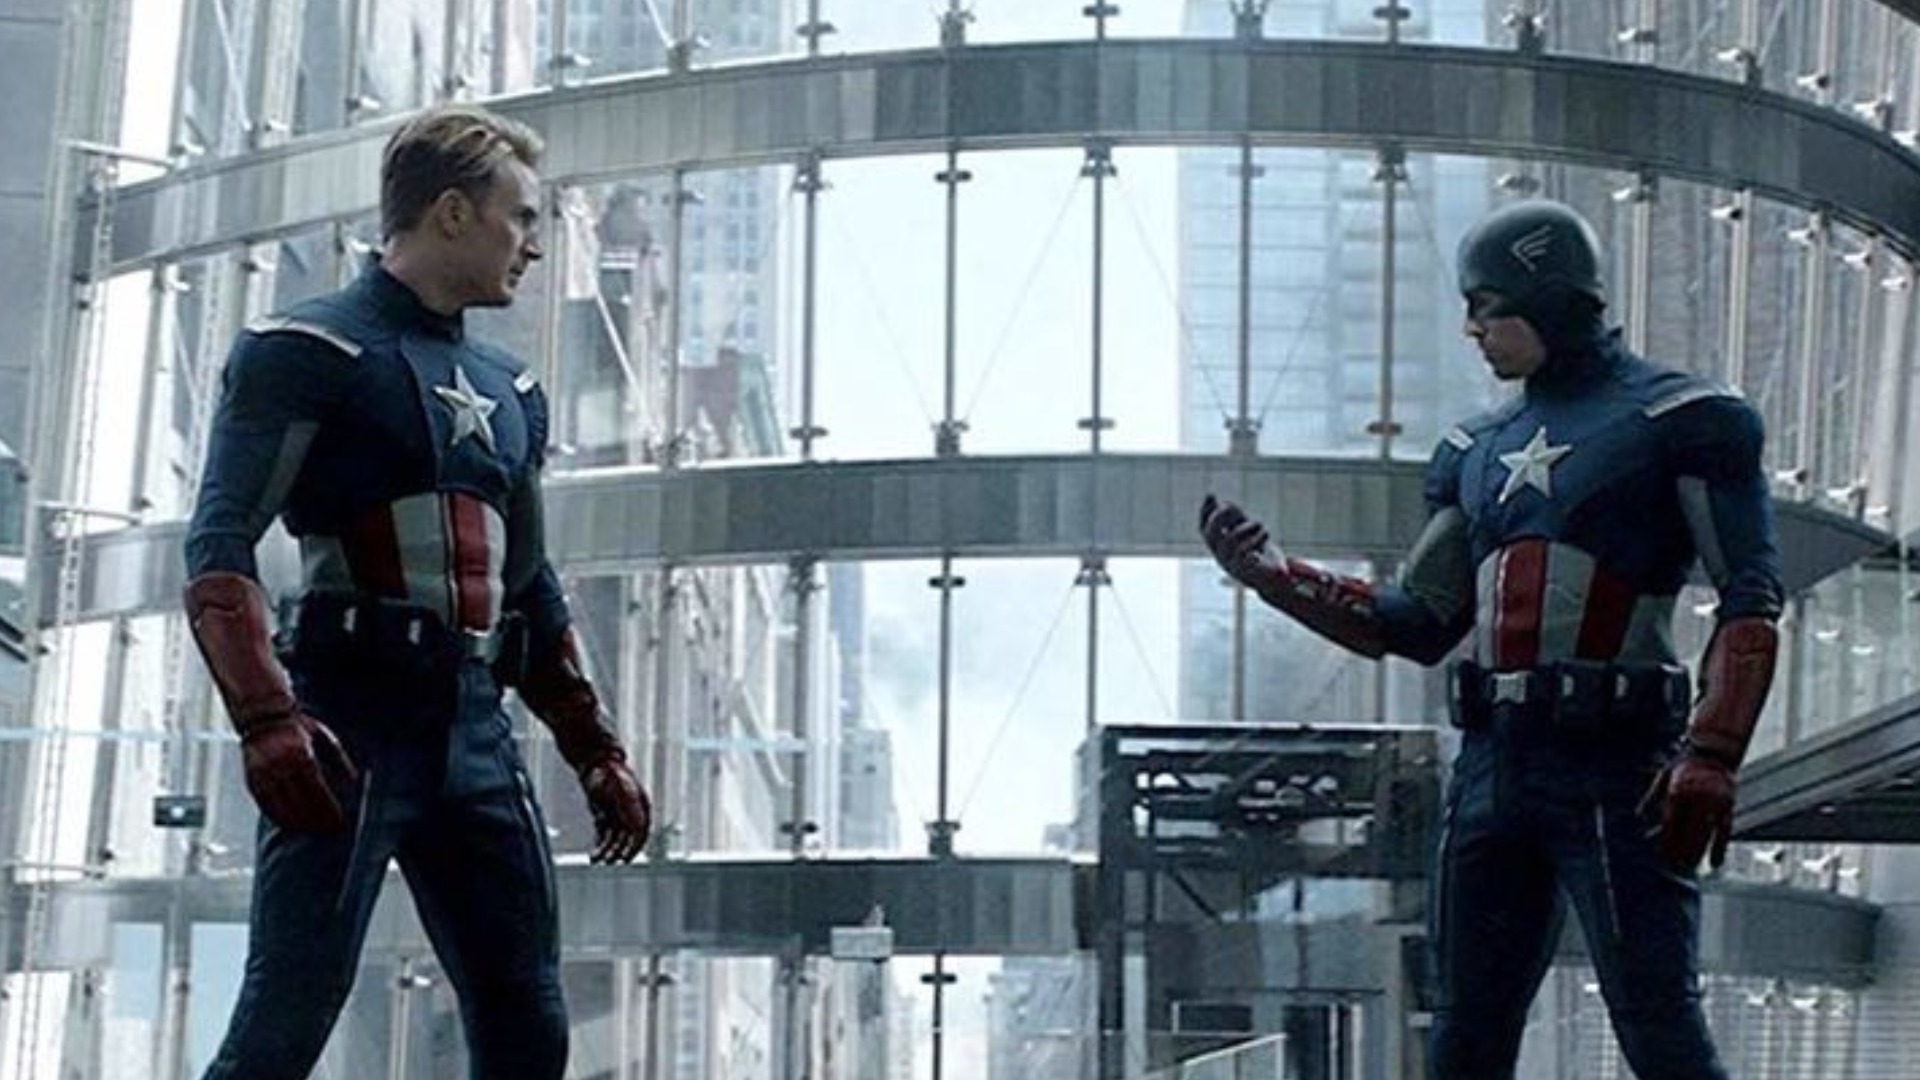 Avenger Captain America best scenes